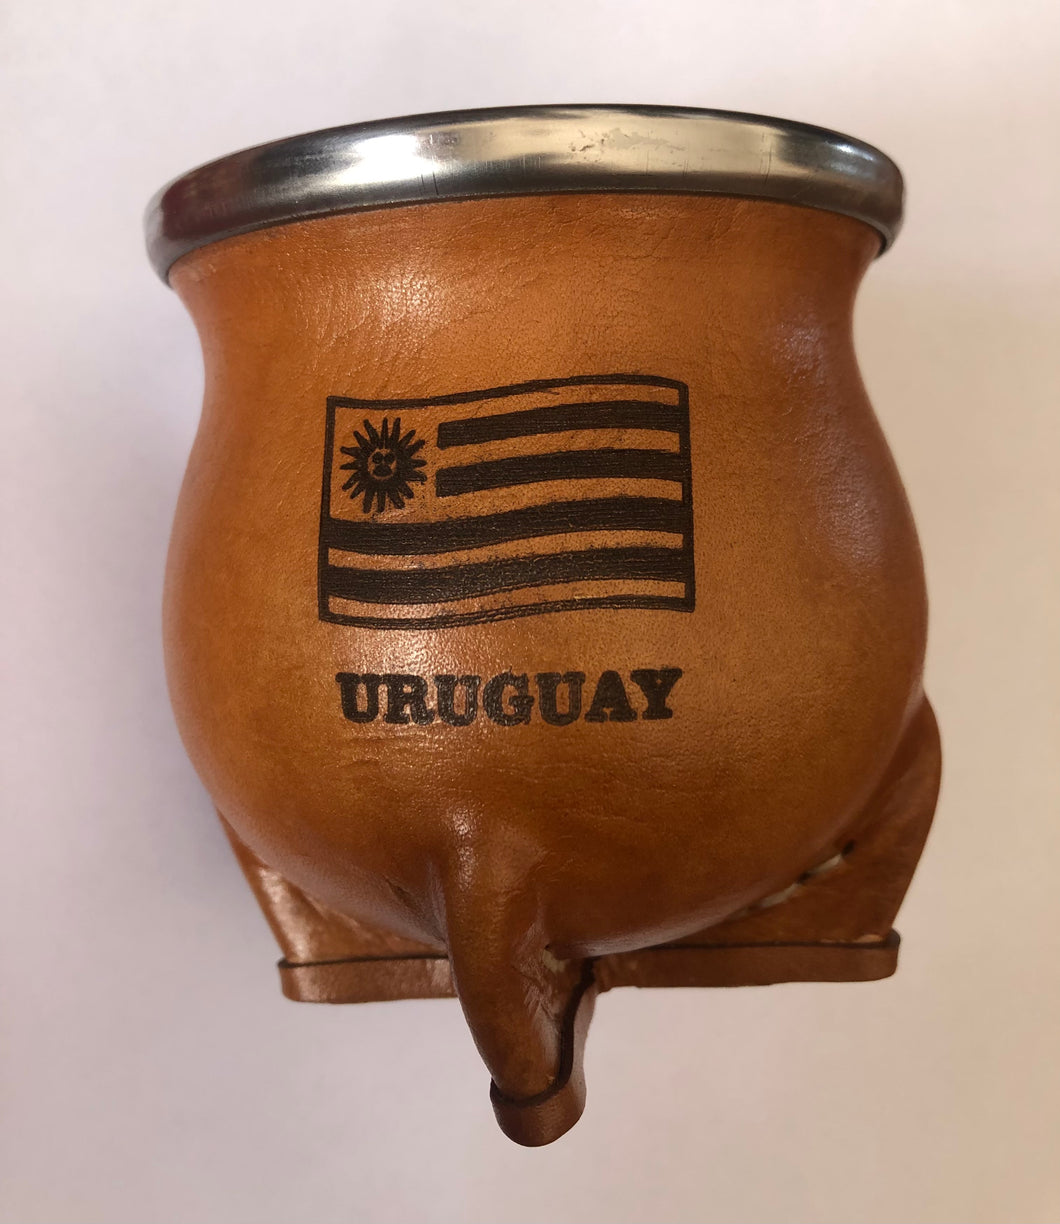 Mate de cerámica Uruguay